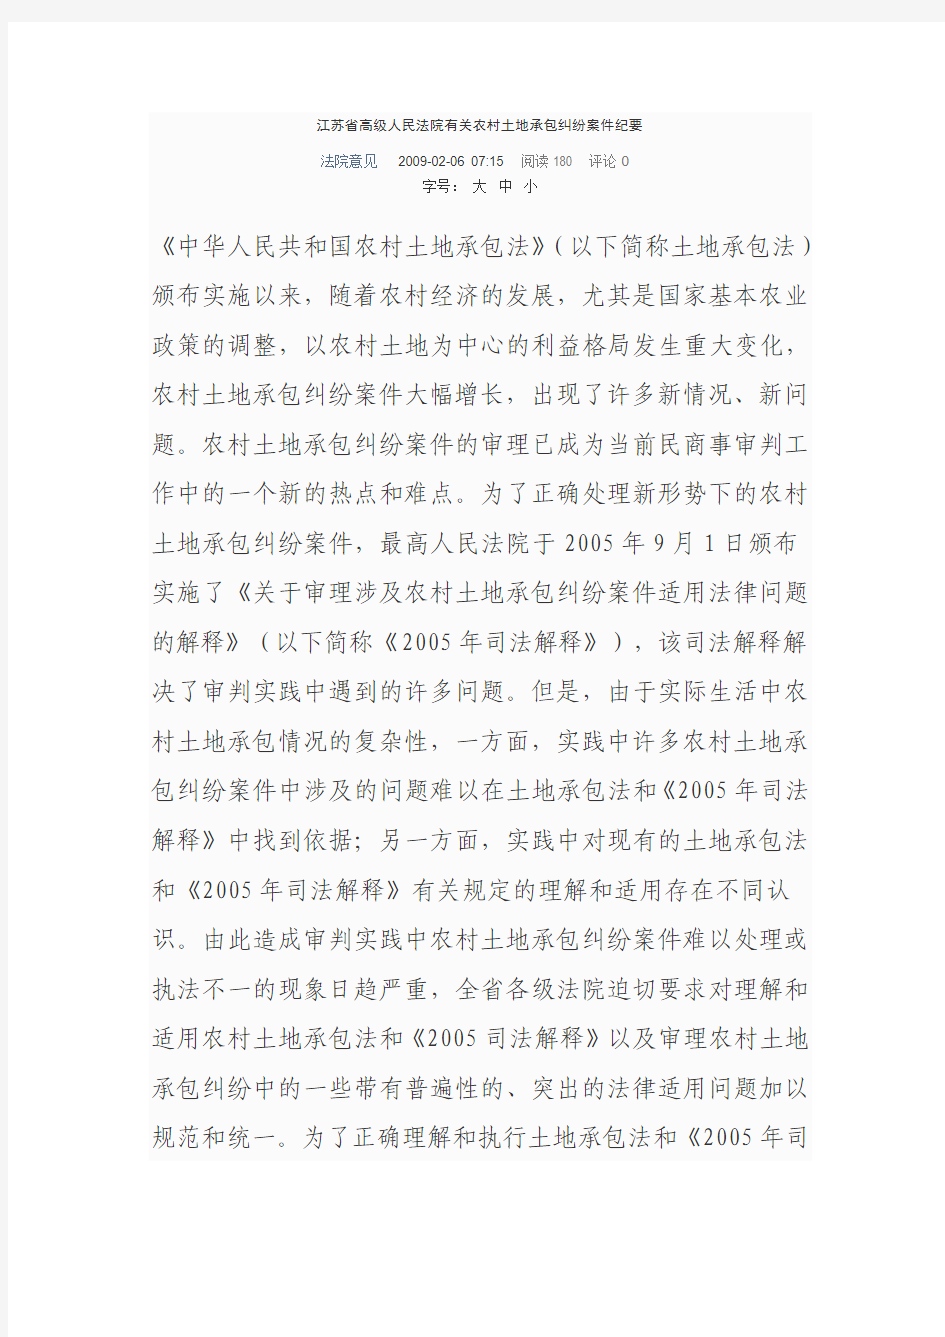 江苏省高级人民法院有关农村土地承包纠纷案件纪要